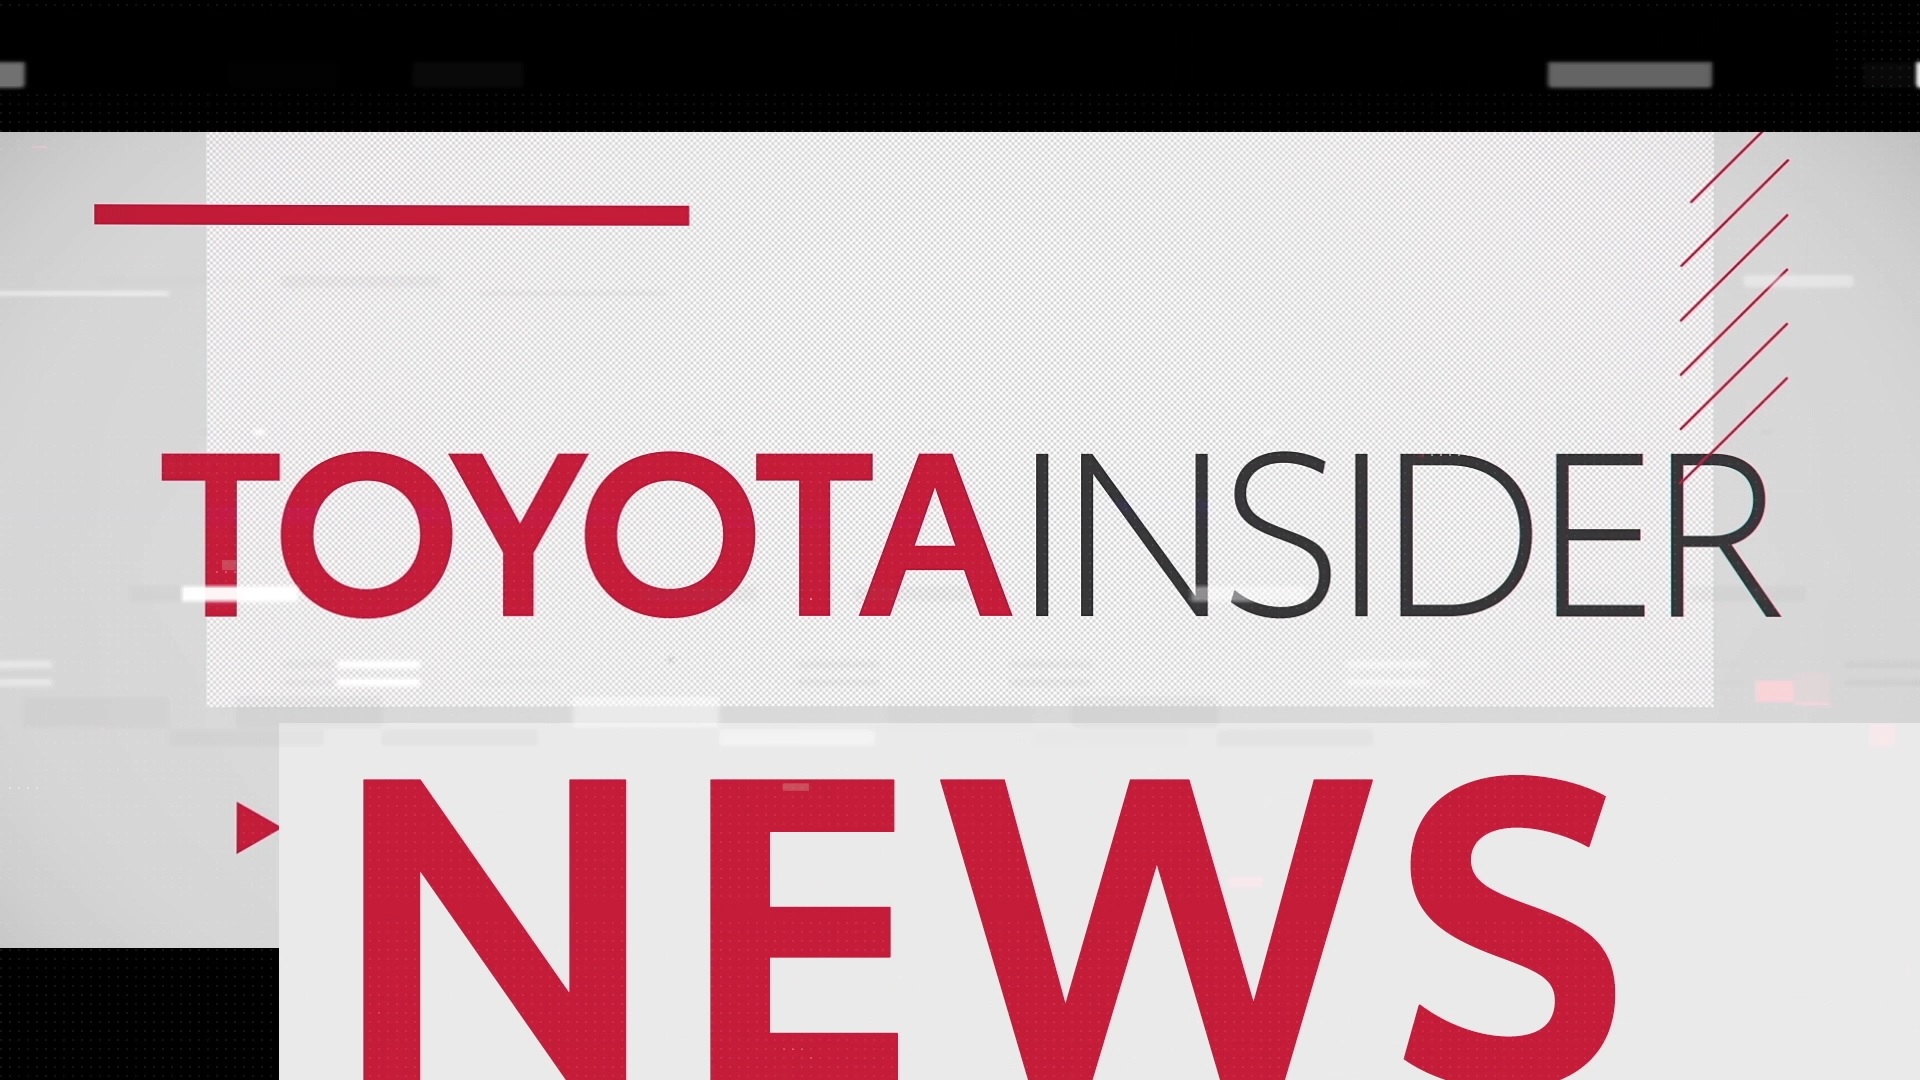 Polska premiera Toyoty Yaris Cross. W przedsprzedaży złożono już 450 zamówień | Toyota Insider News